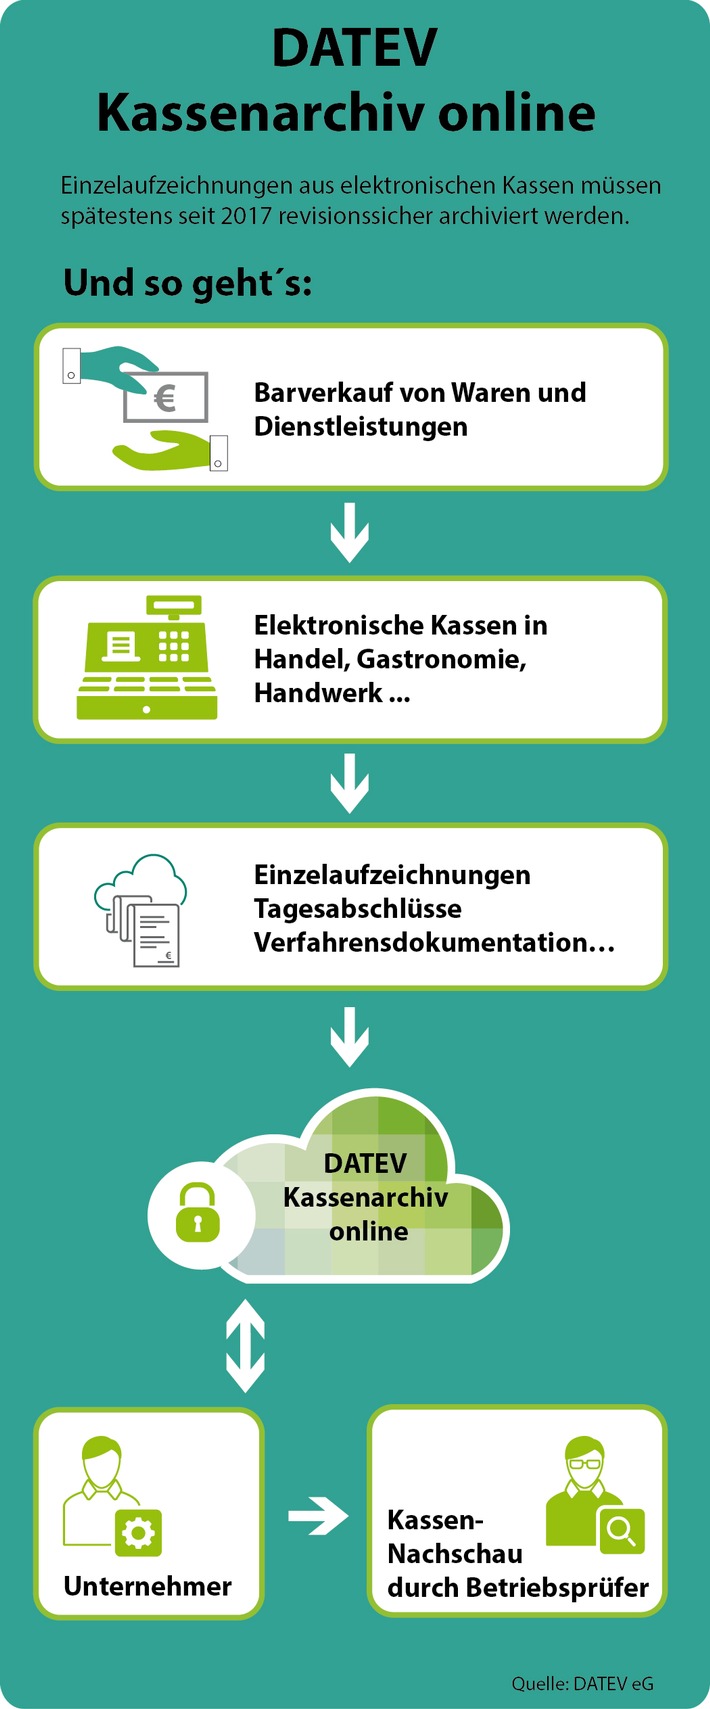 Grünes Licht für Datev Kassenarchiv online / Einfache Portallösung für bargeldintensive Branchen